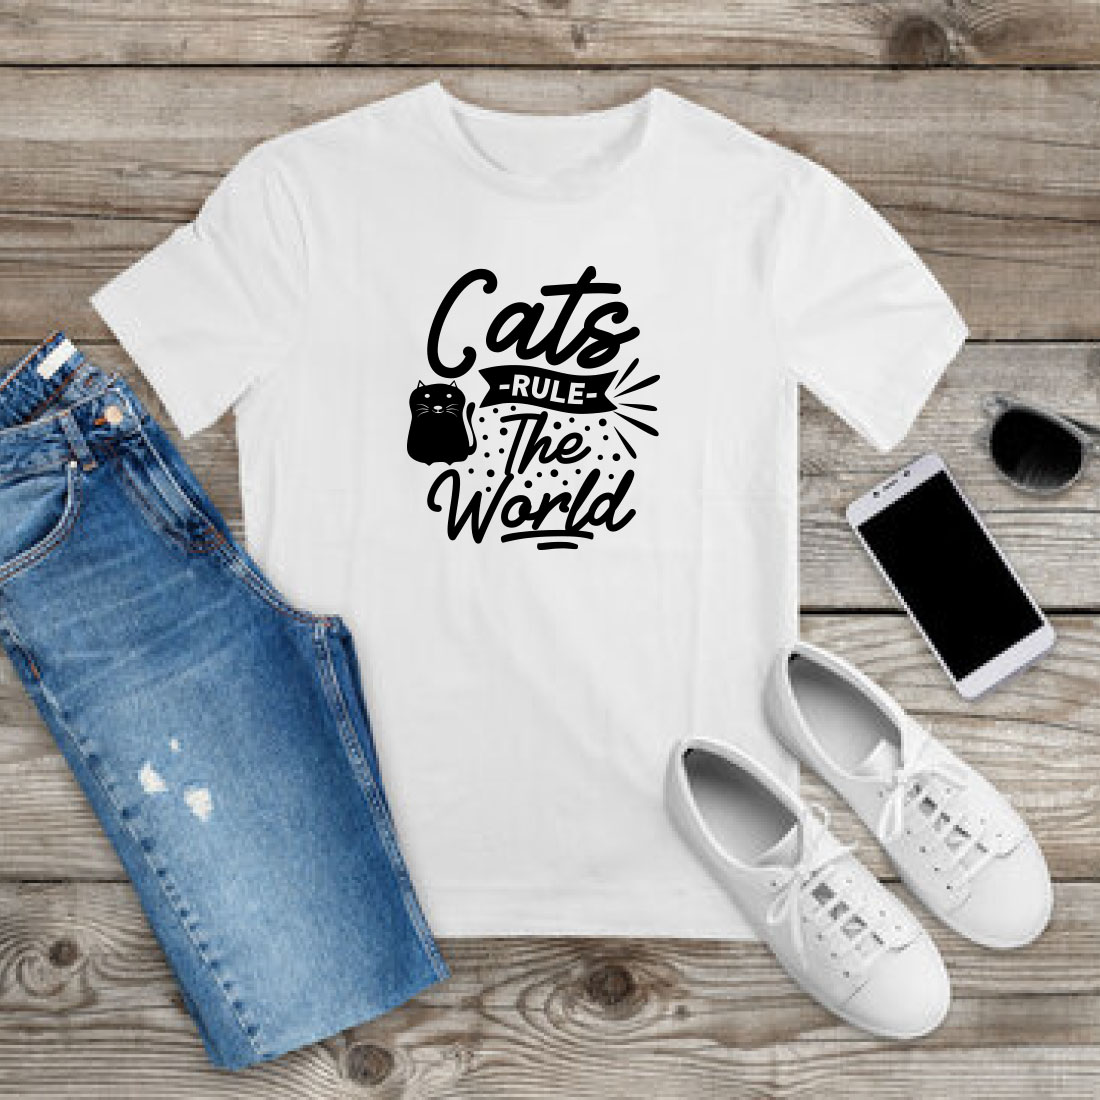 Cat T-shirt Design Bundle Vol-13 preview image.